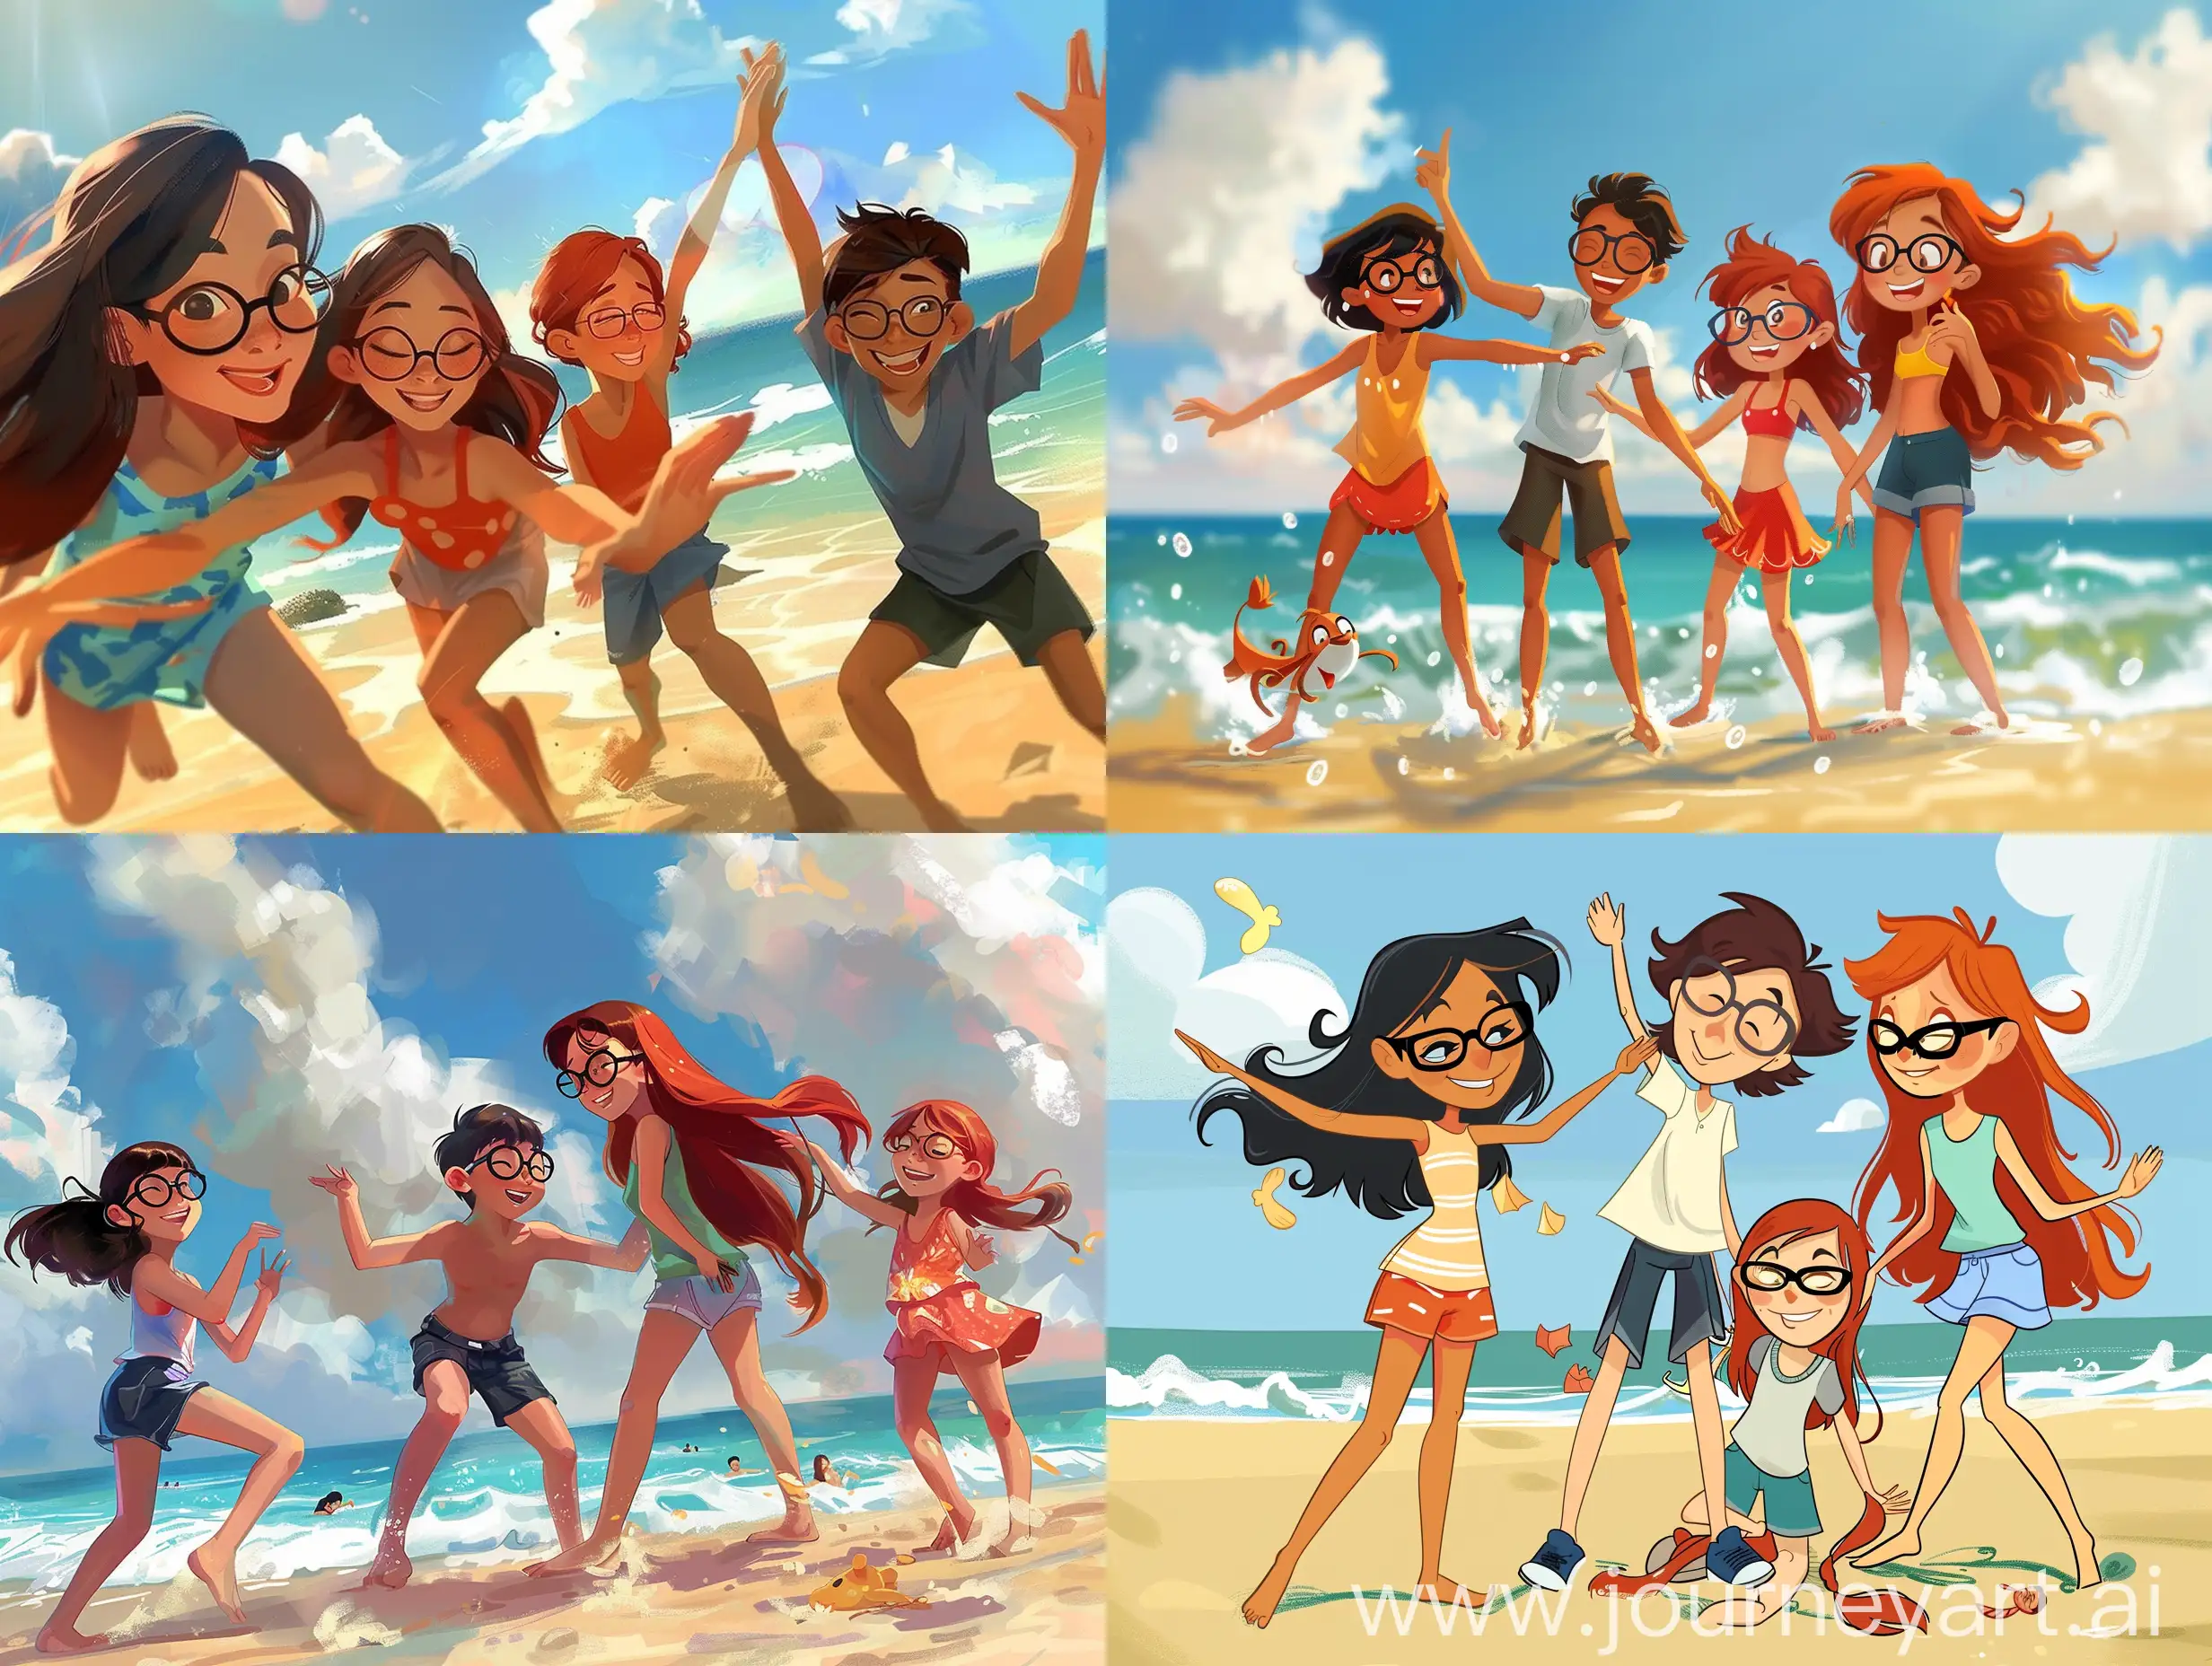 Tatile giden 4 arkadaş 3 kız 1 erkek kızlardan birisi kısa siyah saçlı diğeri uzun kahverengi saçlı üçüncü kız ise uzun kızıl saçlı erkek olan ise kısa saçlı ve uzun boylu hepsinde gözlük var hepsi sahilde oyun oynayarak eyleniyorlar ve kamera çok uzaktan onları çekiyor ve Disney animasyonu şeklindeler